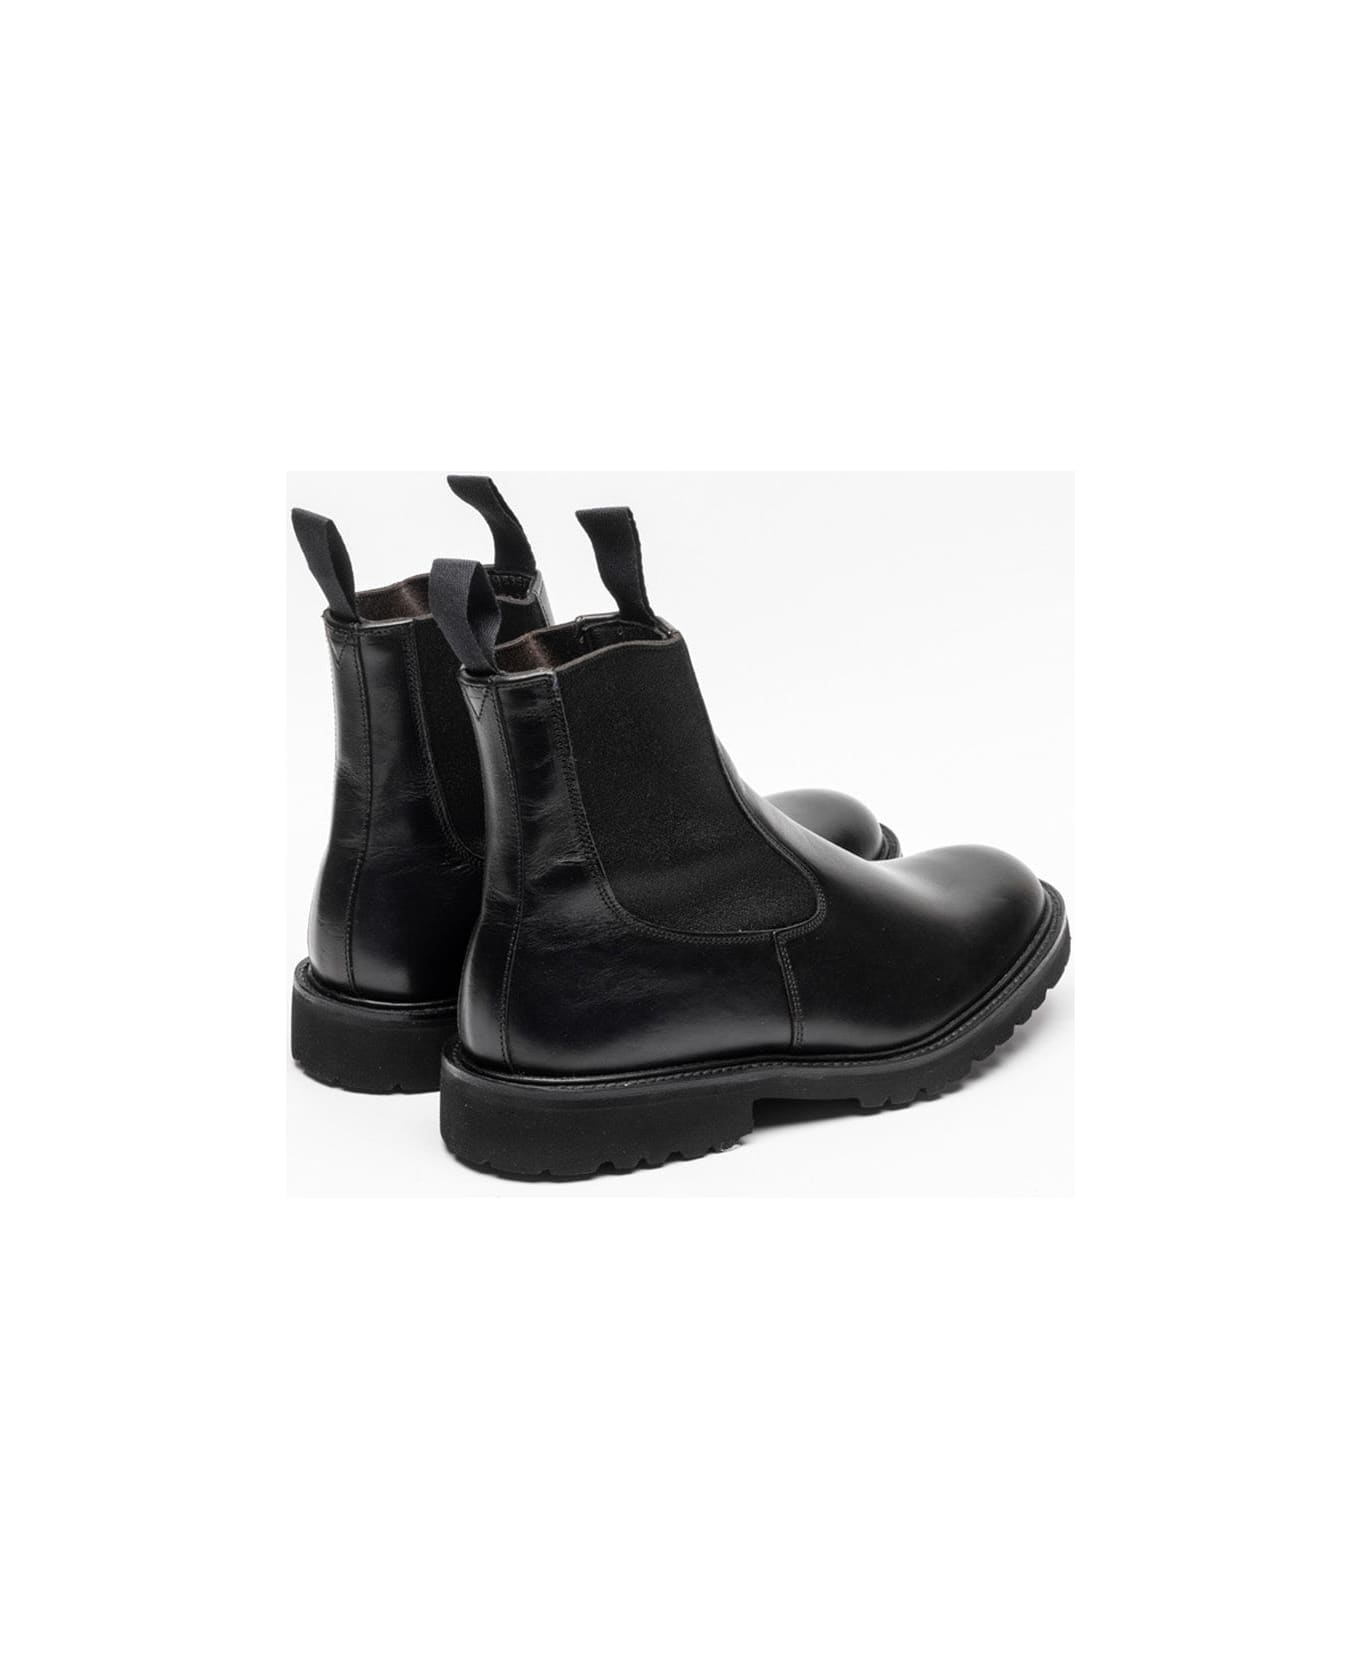 Tricker's Black Olivvia Calf Chelsea Boots - Nero